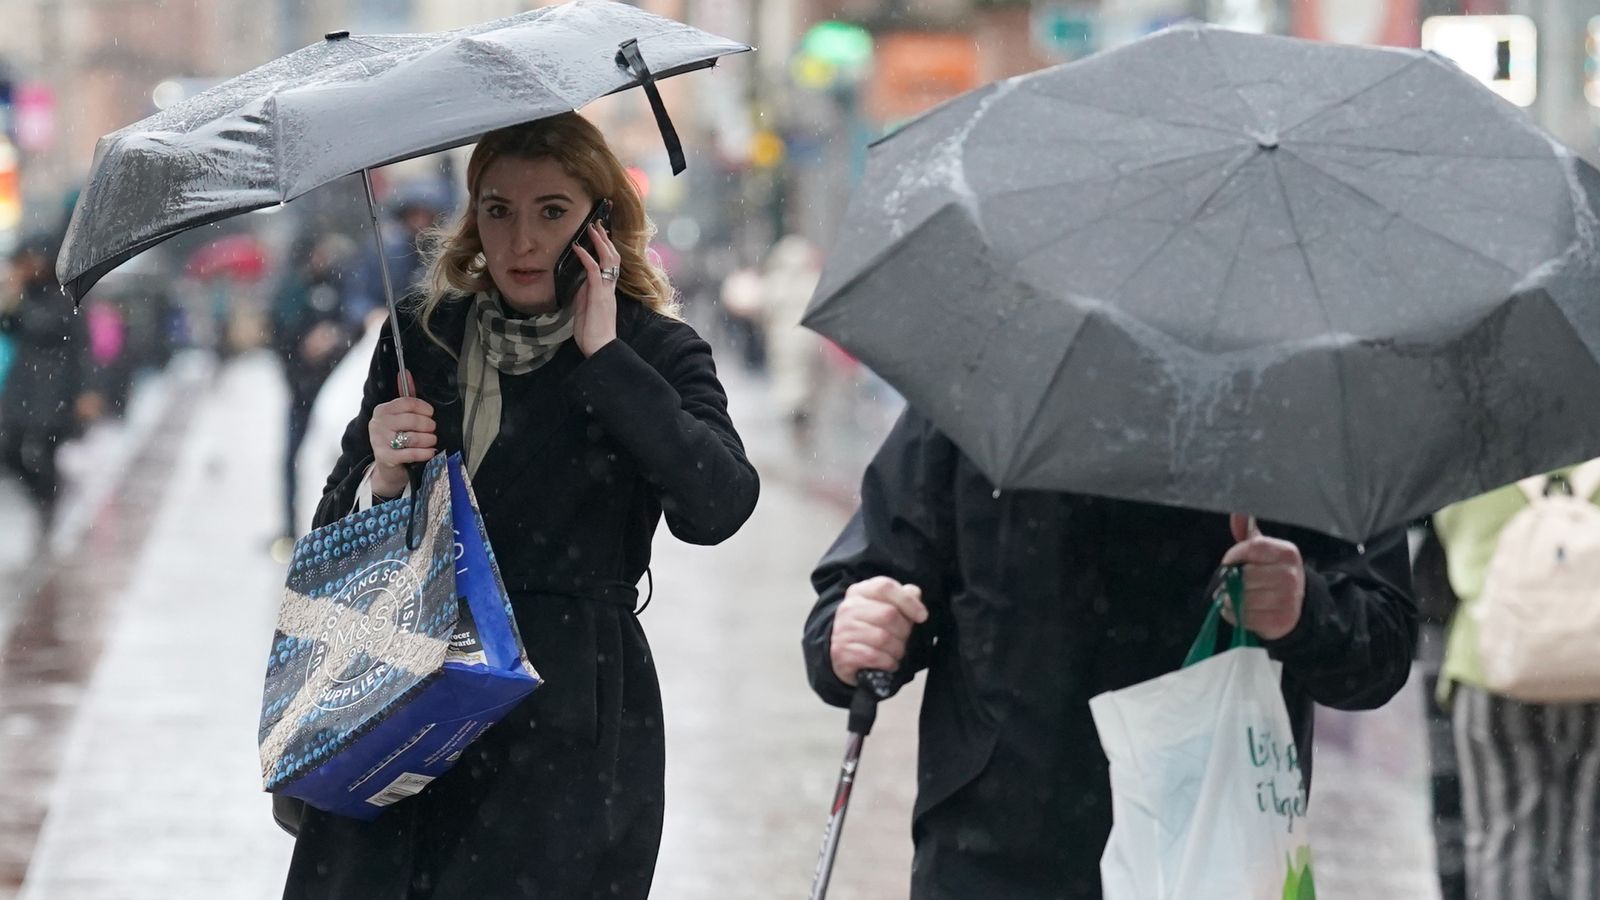 Météo au Royaume-Uni : le Met Office émet un avertissement météo orange de « danger pour la vie » en Écosse alors que de fortes pluies et des inondations sont attendues |  Nouvelles du Royaume-Uni